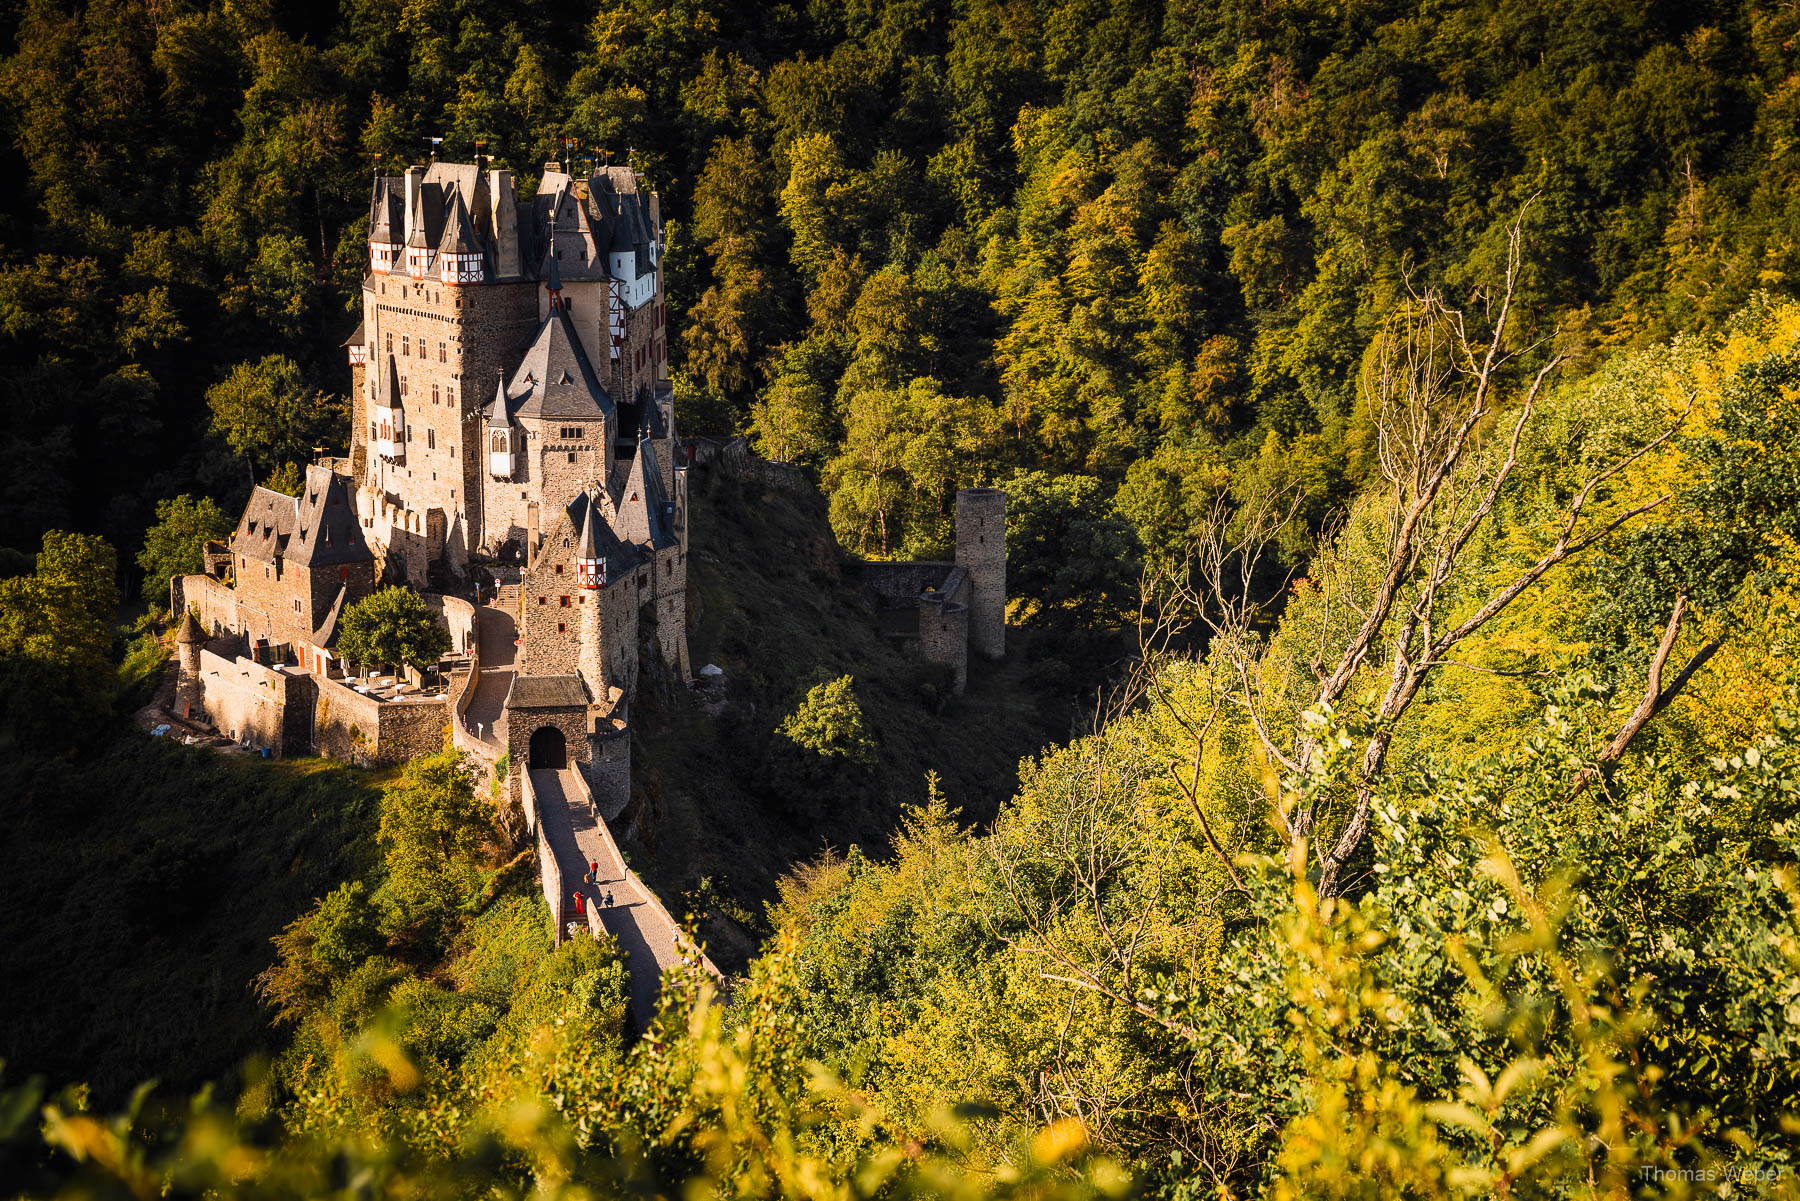 Hochmittelalterliche Burg in Deutschland, Fotograf Thomas Weber aus Oldenburg